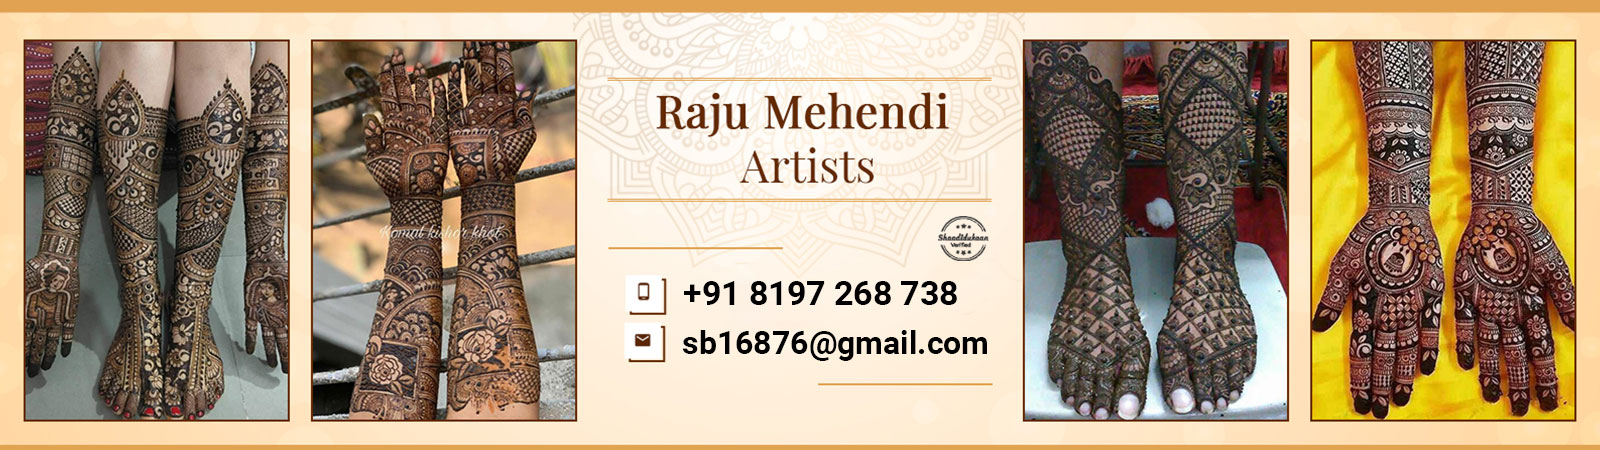 raju-mehendi-artist